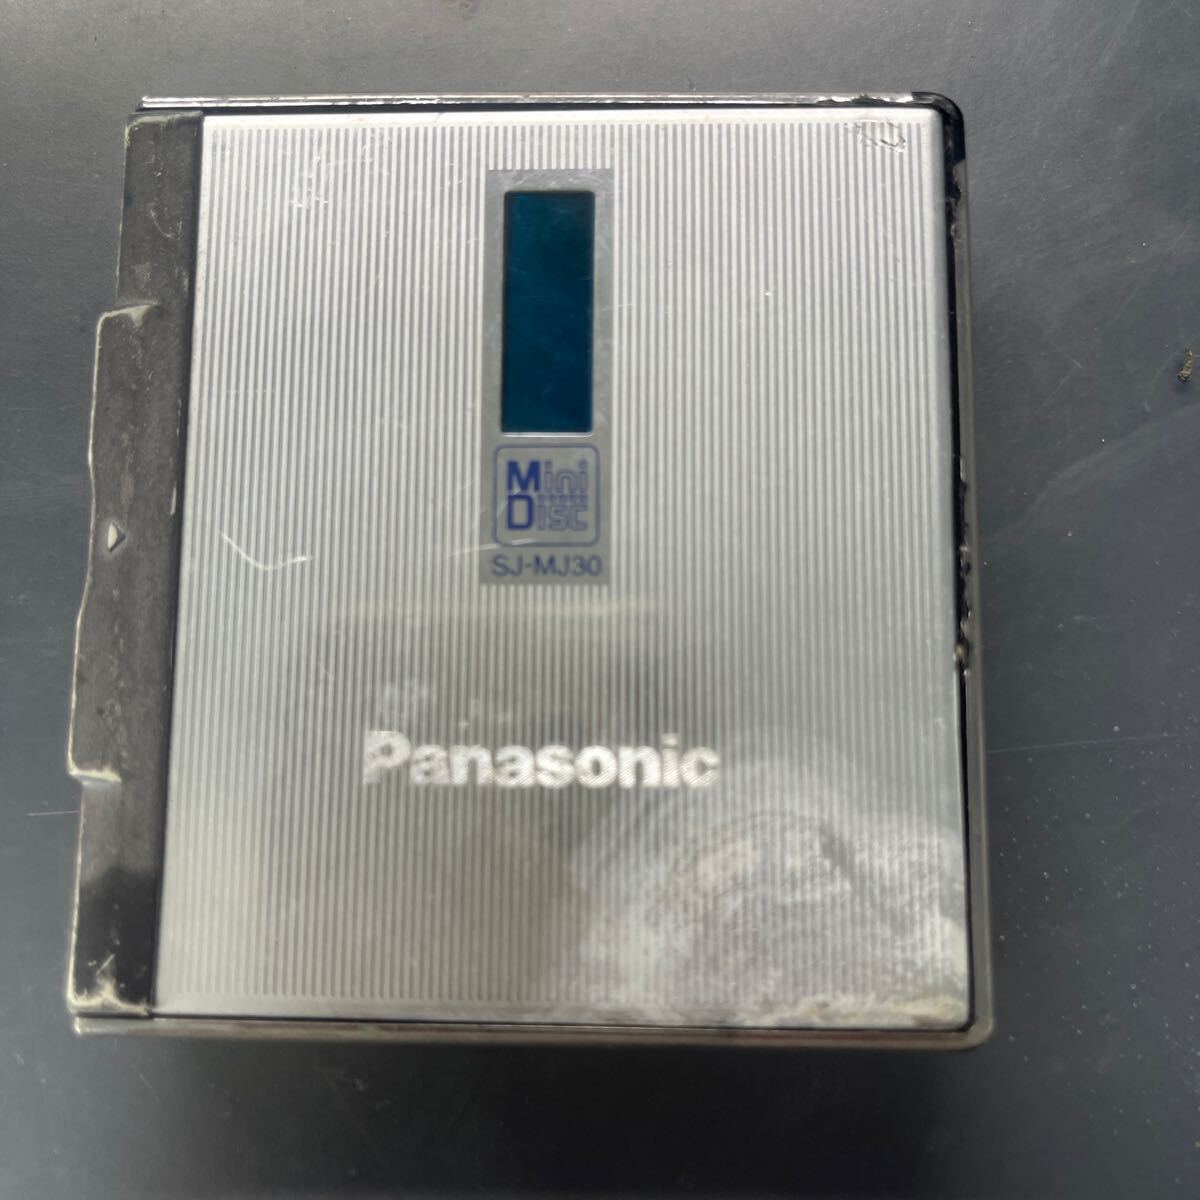  Panasonic Mini Disc SJ- MJ30